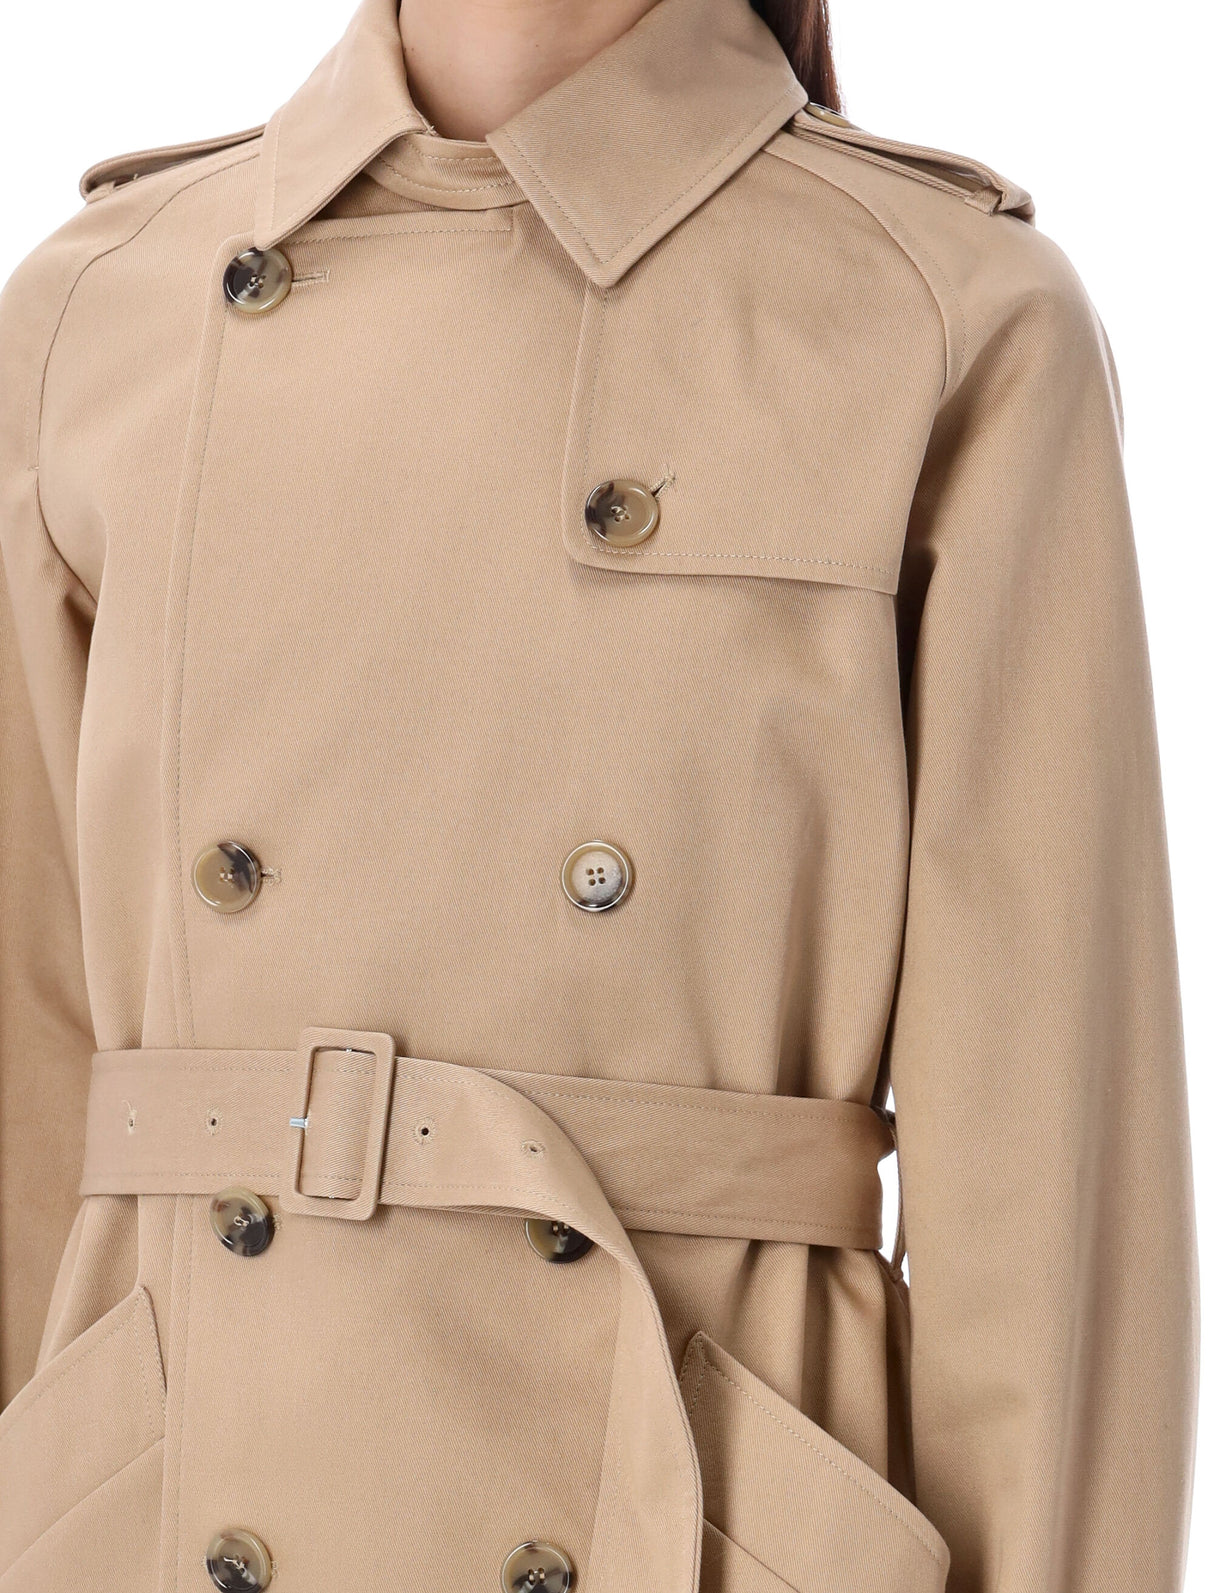 Áo khoác trench cotton chống thấm cho phụ nữ - Màu tan